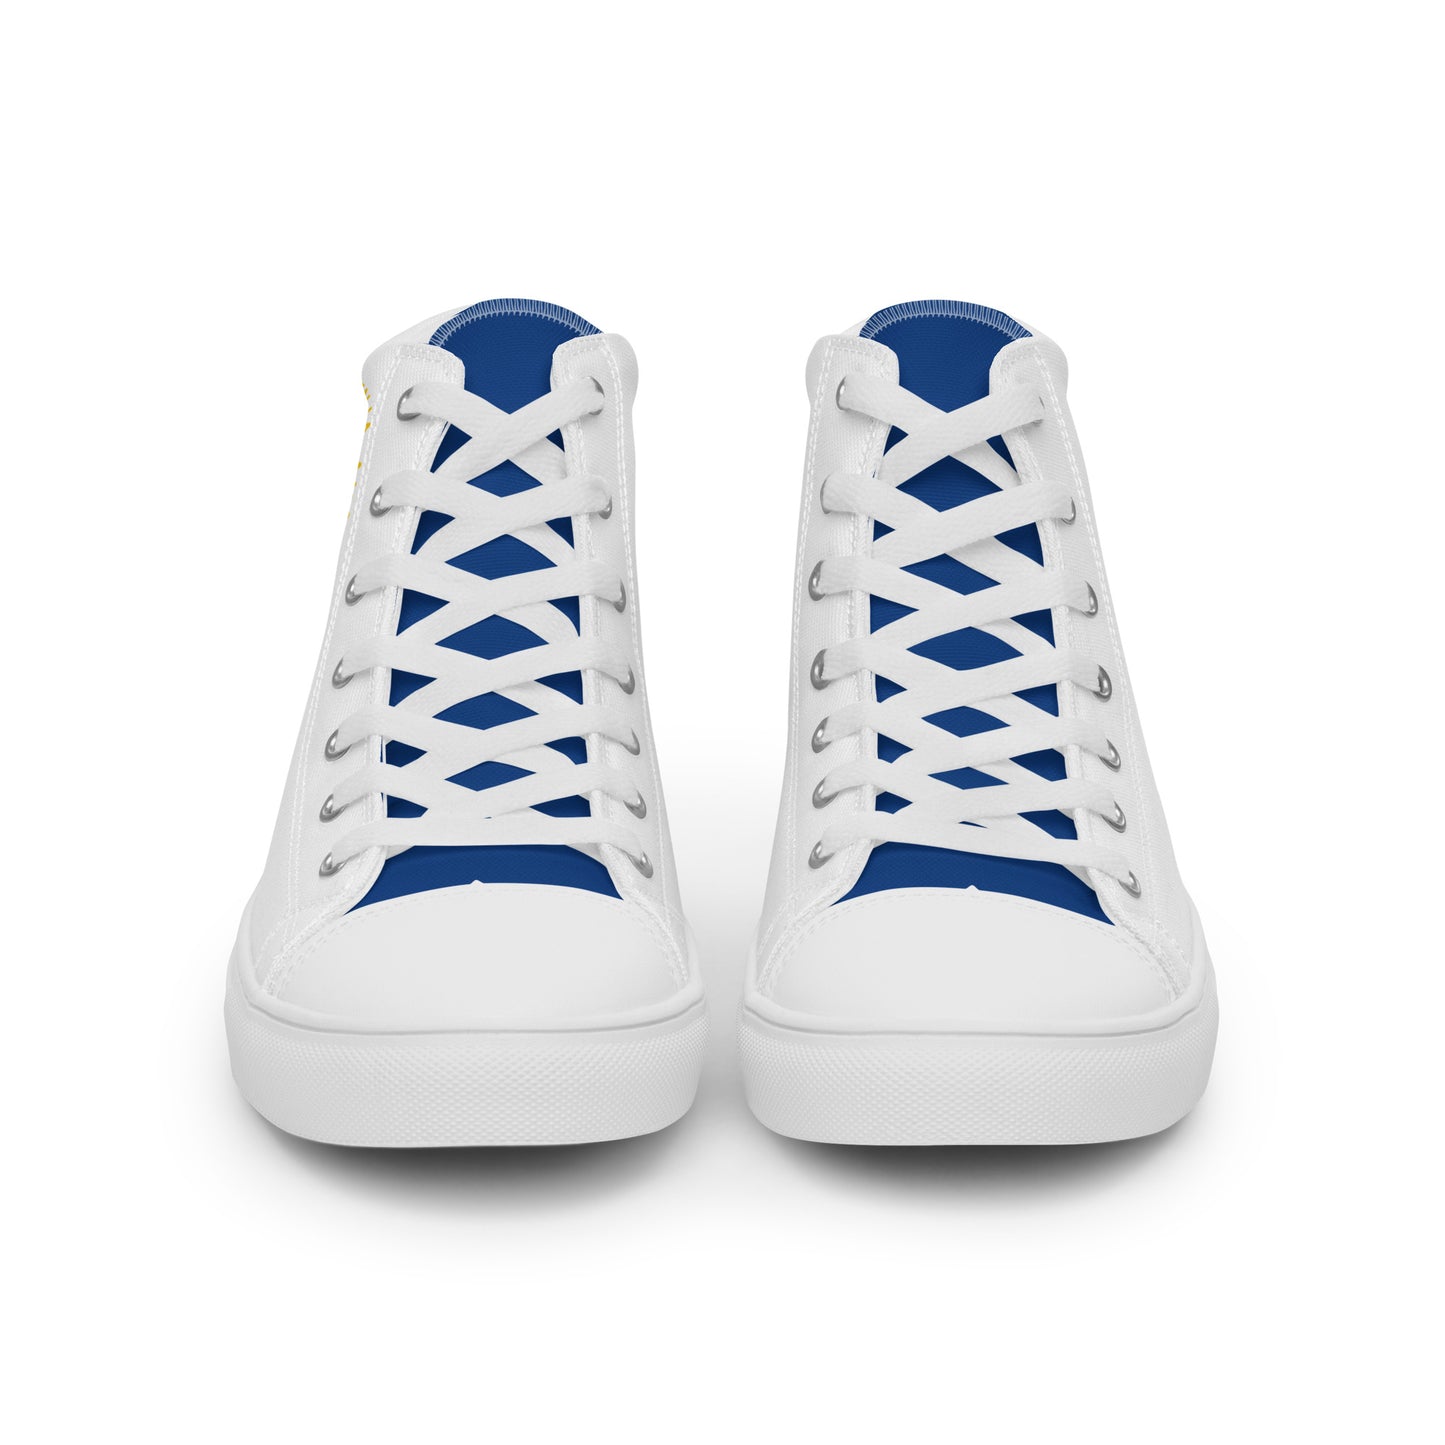 El Salvador - Men - White - High top shoes